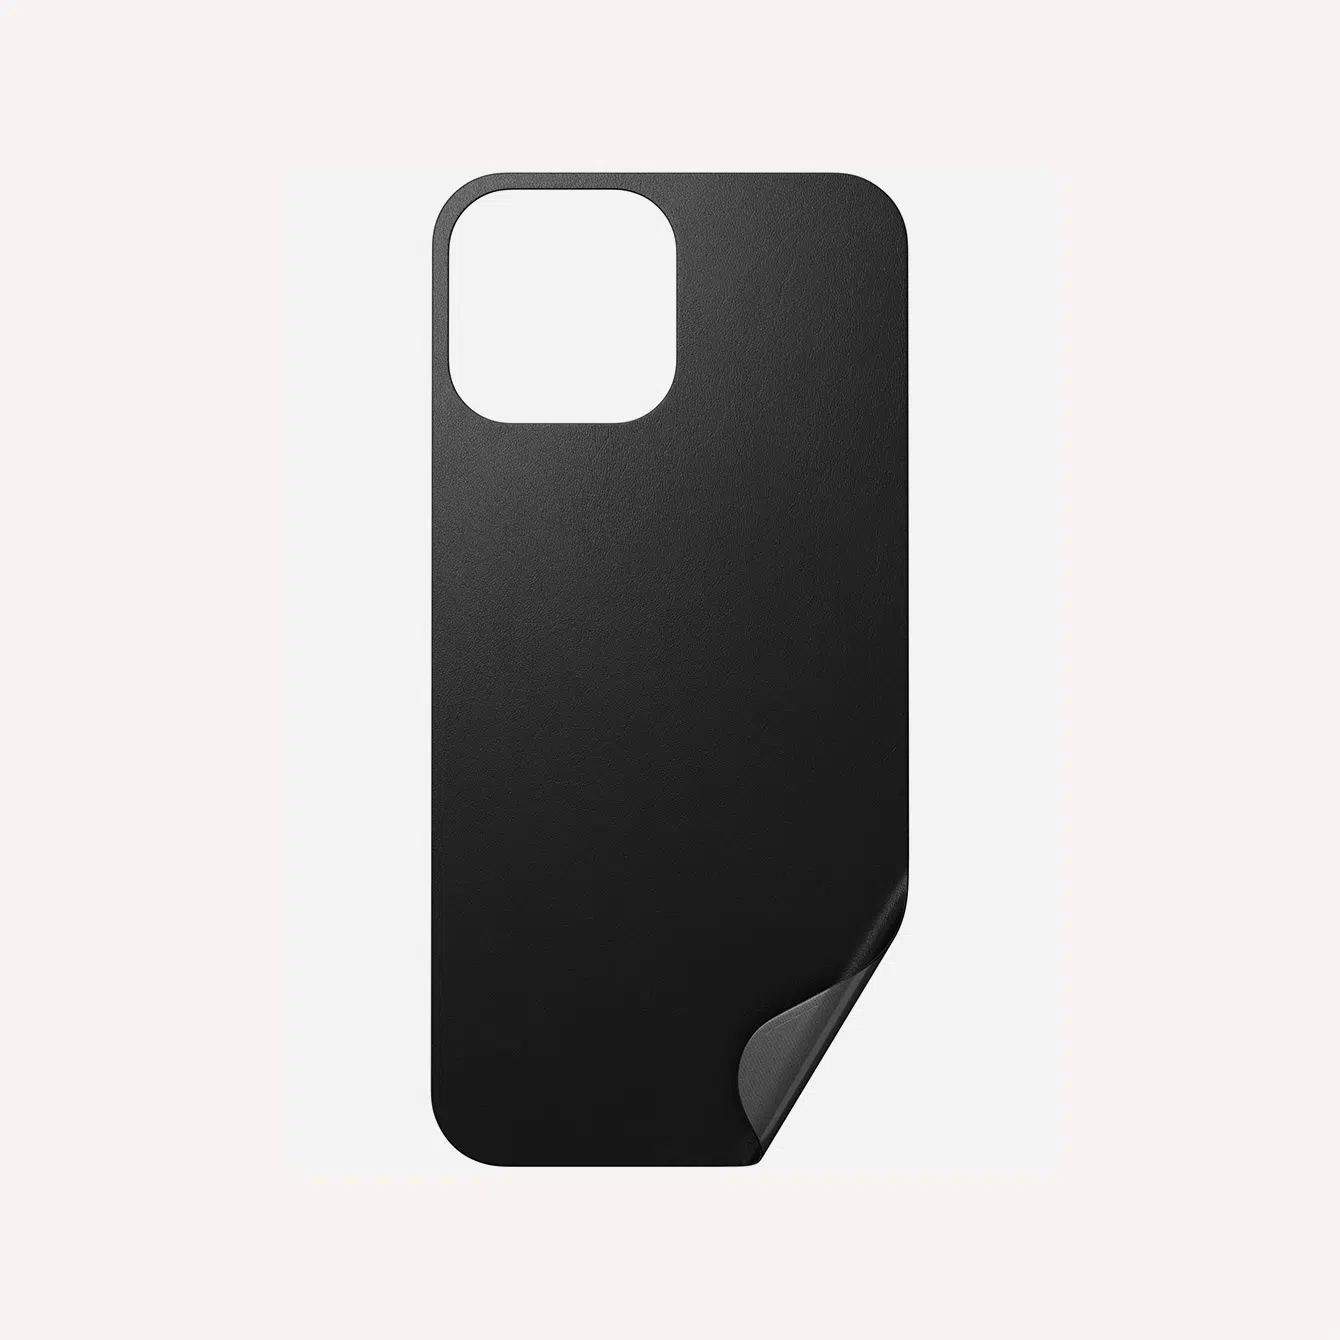 Nomadgoods Leather Skin iPhone Case